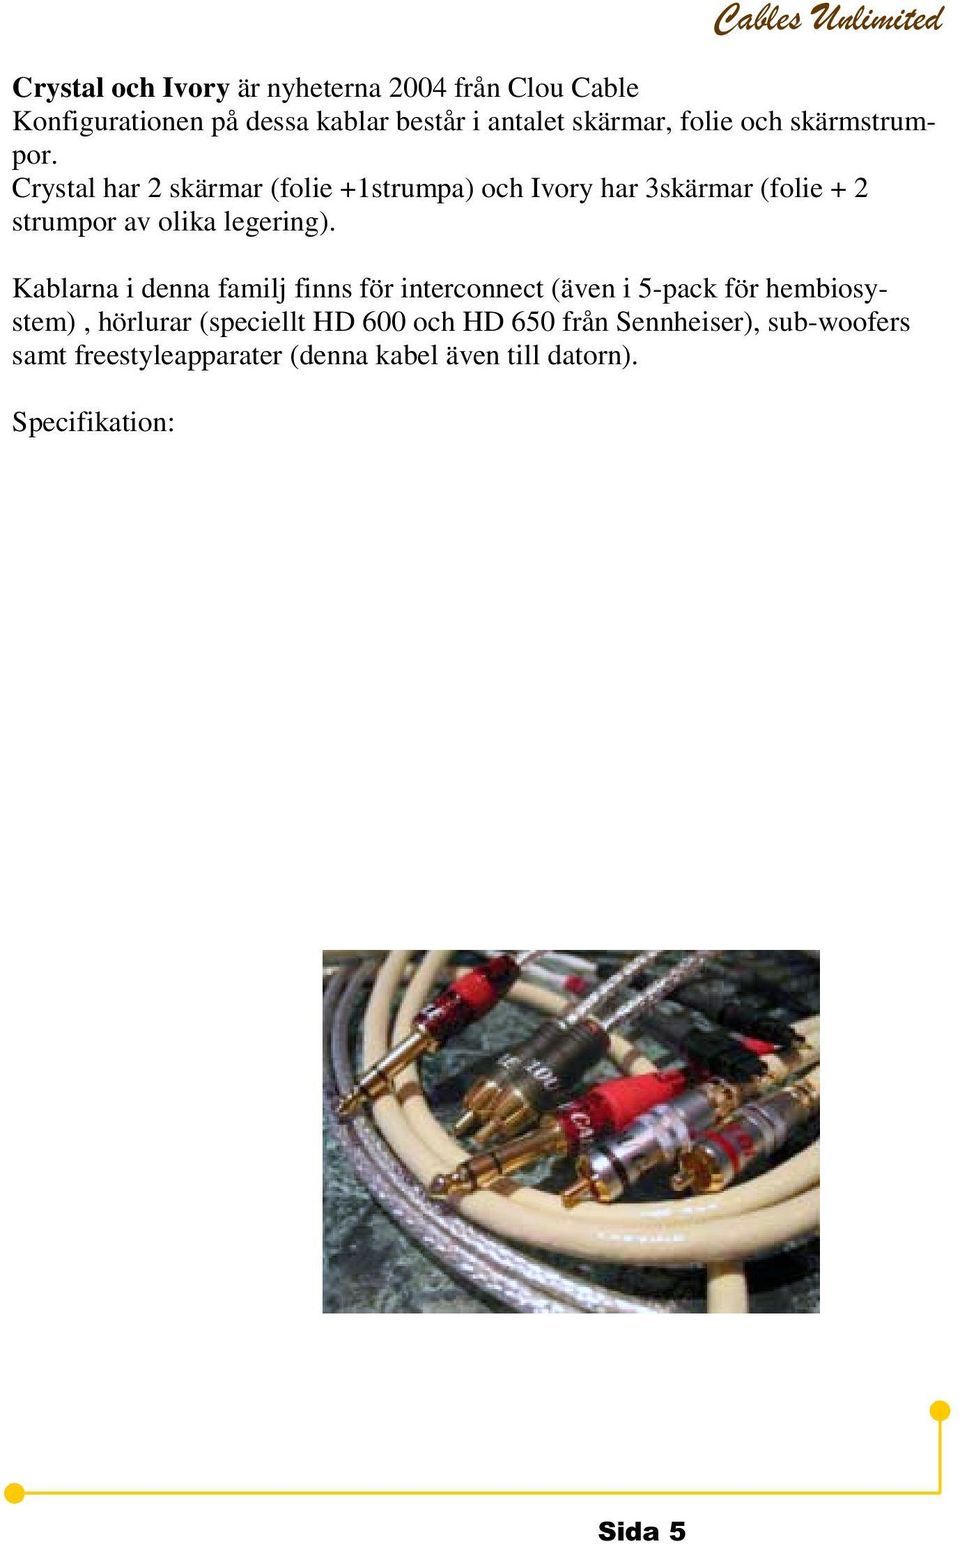 Kablarna i denna familj finns för interconnect (även i 5-pack för hembiosystem), hörlurar (speciellt HD 600 och HD 650 från Sennheiser), sub-woofers samt freestyleapparater (denna kabel även till